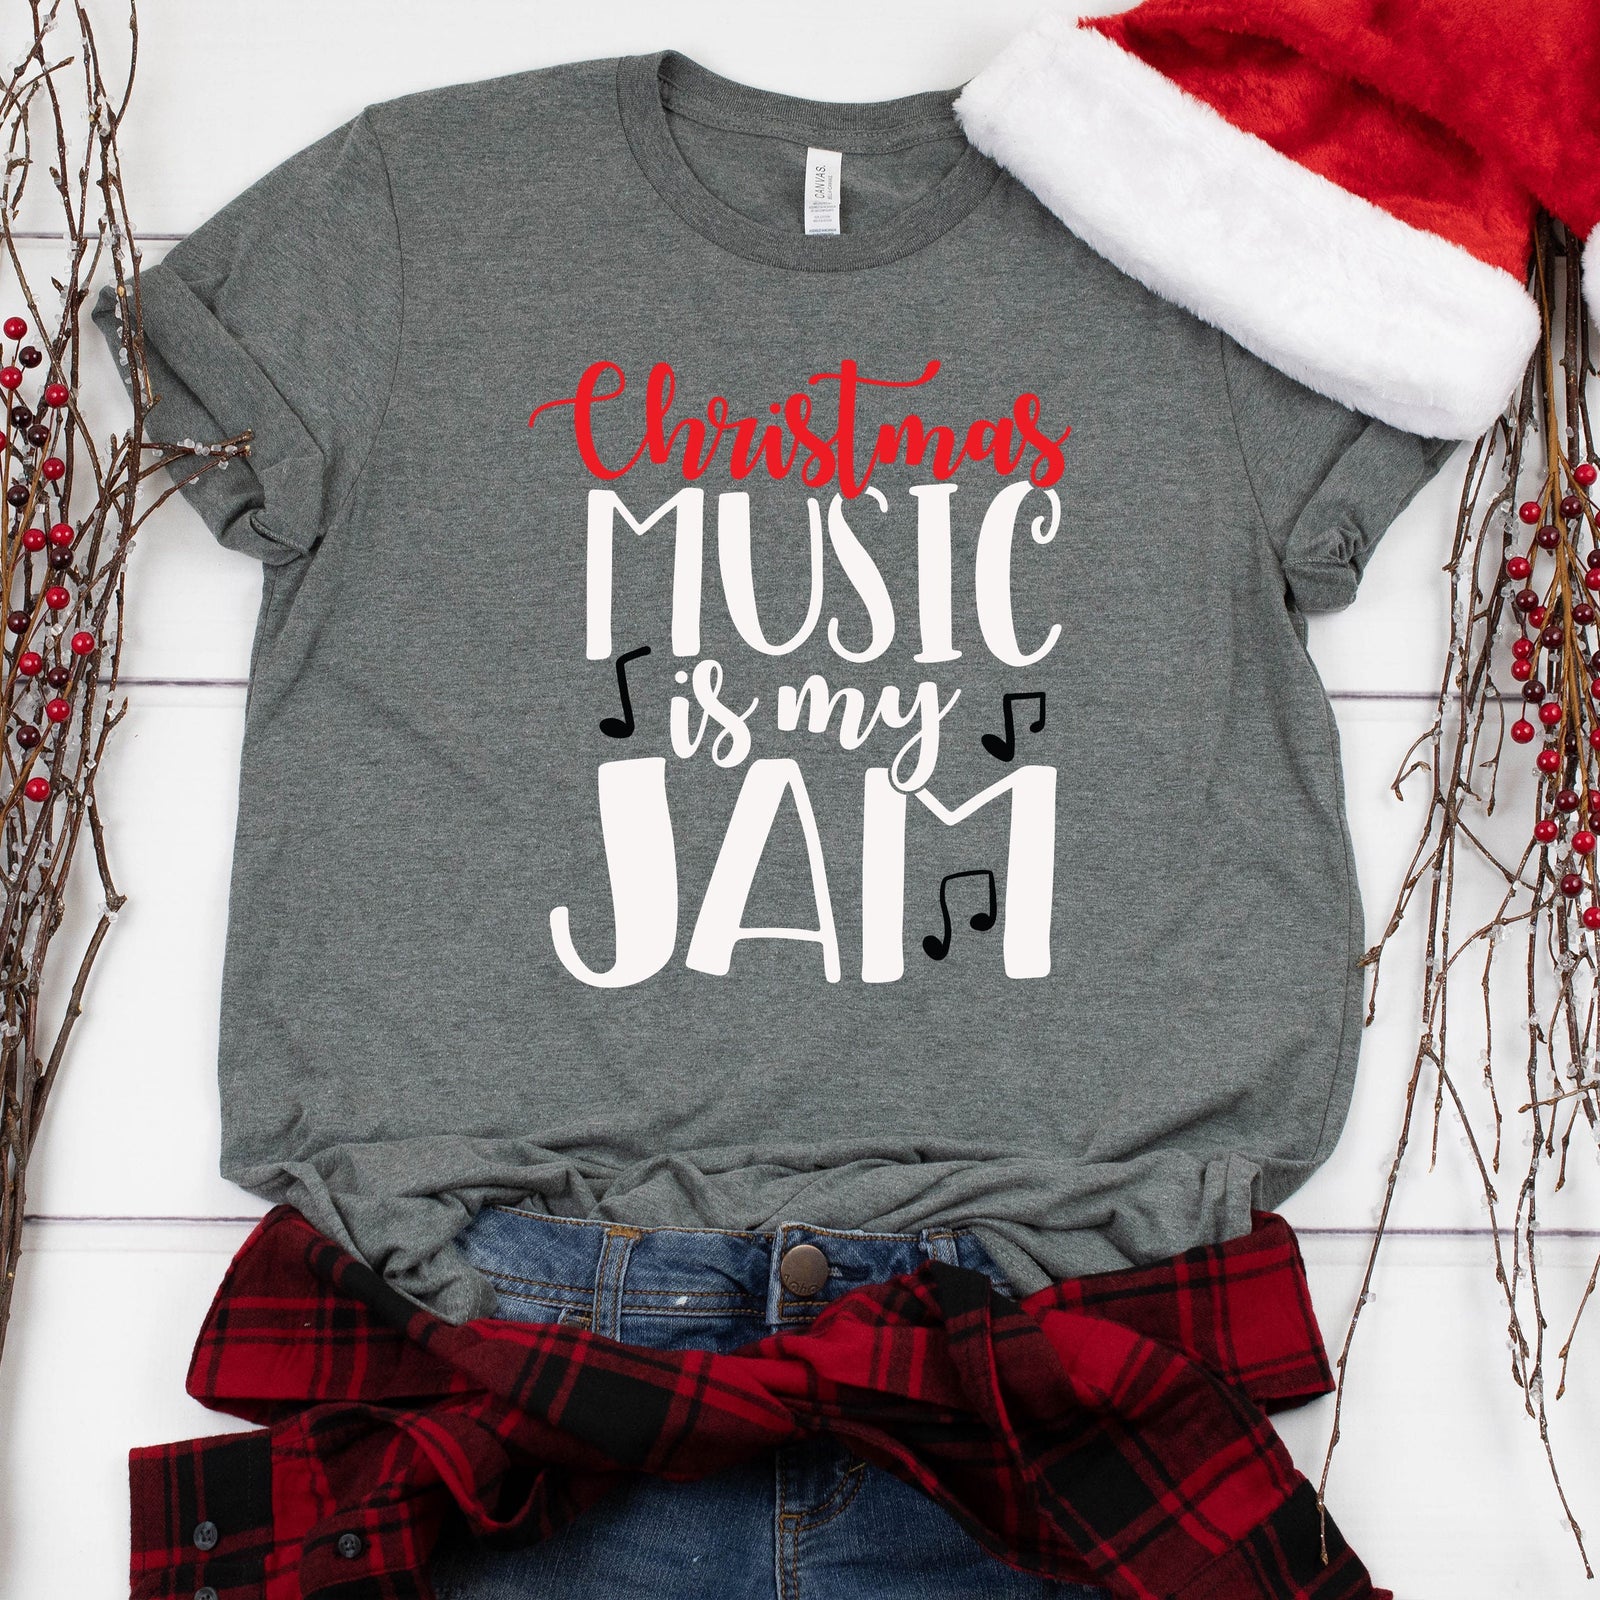 Christmas Music is My Jam Christmas Shirt - Funny Christmas Couple Shirt - Holiday Matching Shirt - Christmas Statement Shirt